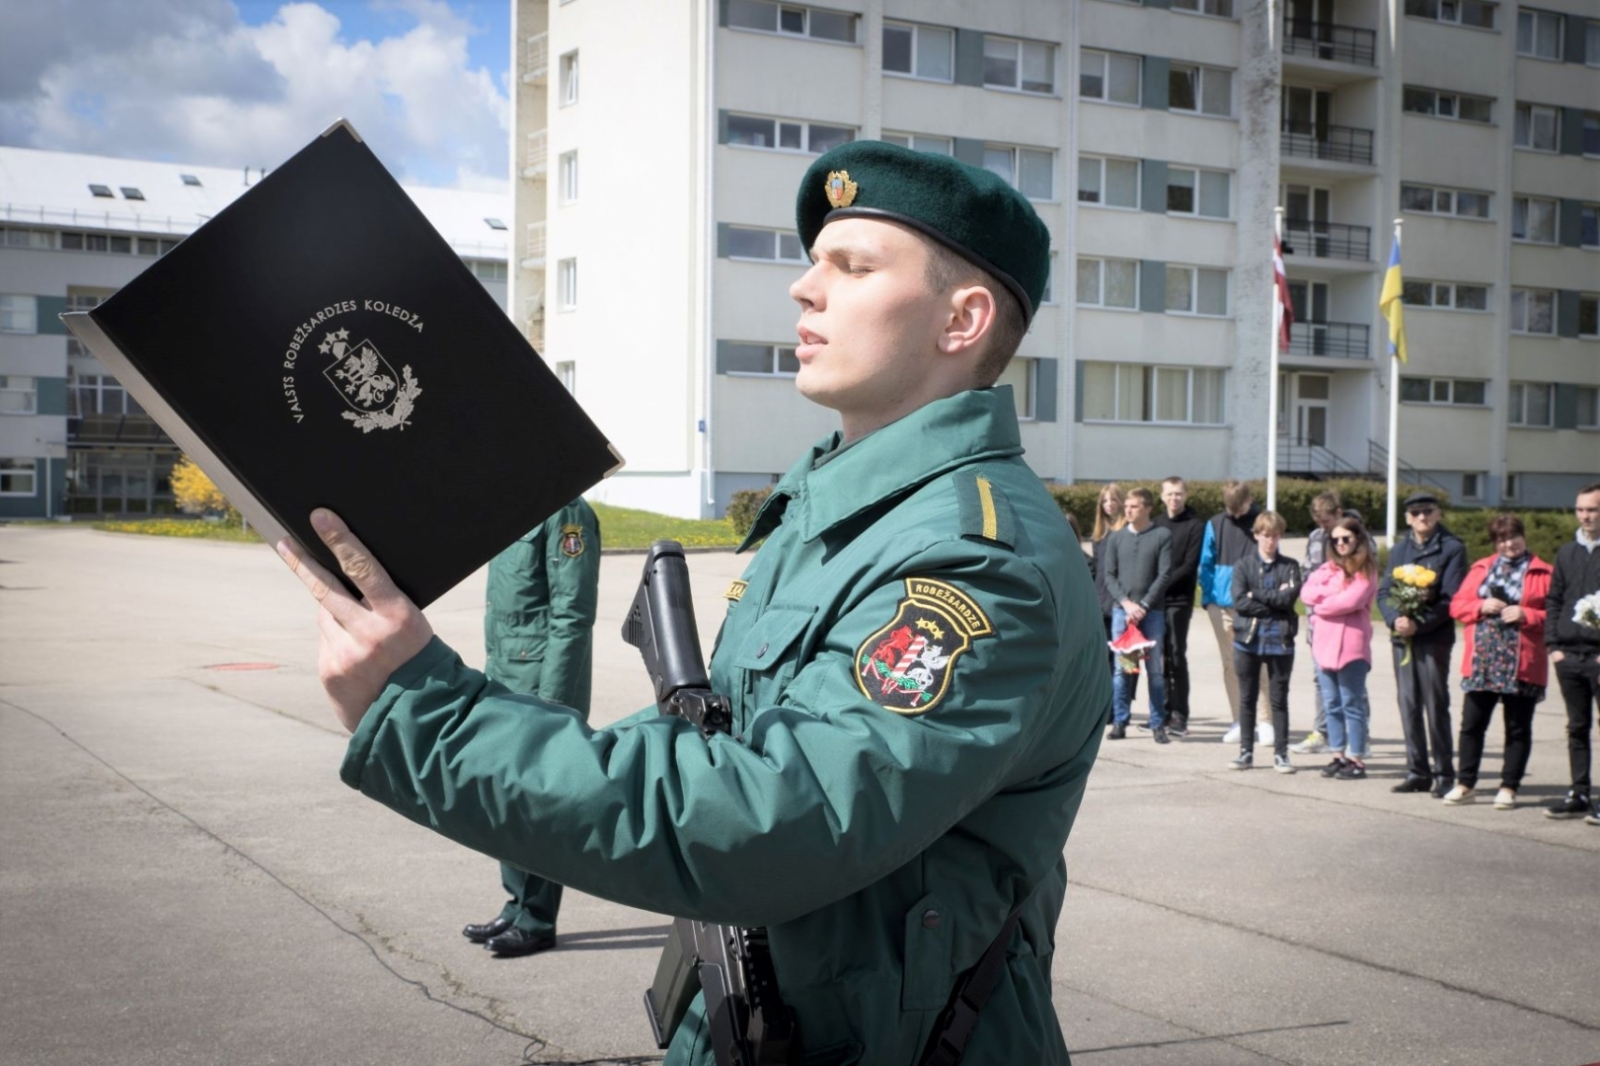 Topošie robežsargi solīja sargāt Latvijas valsti